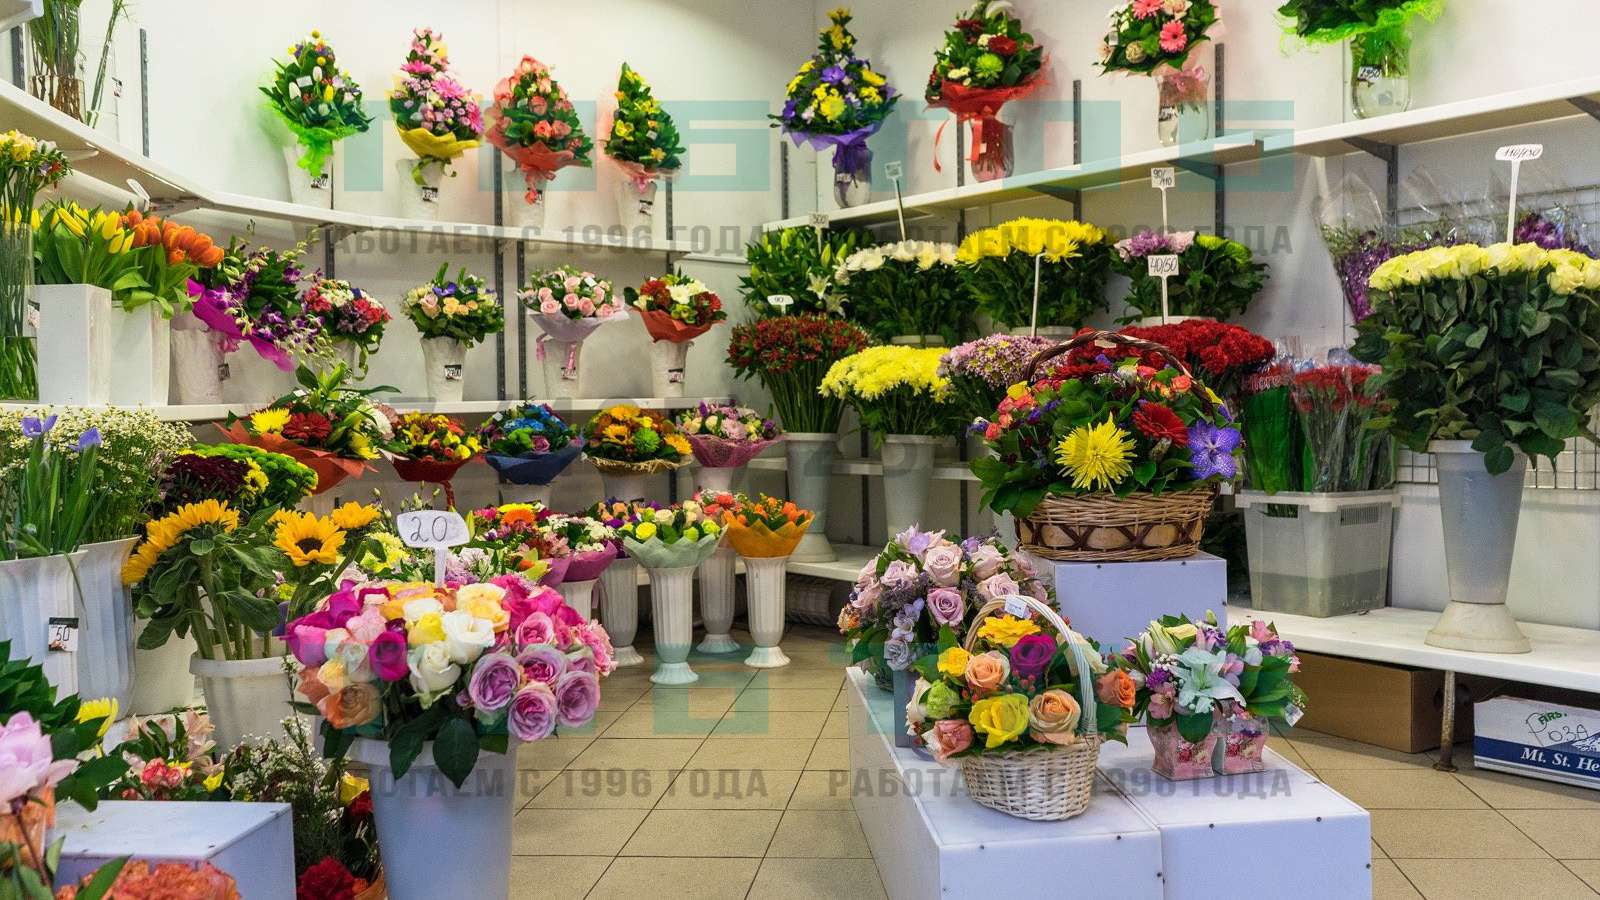 Цветочный магазин поштучно. Цветы в цветочном магазине. Ассортимент цветочного магазина. Цветы магазинные. Прилавок с цветами.